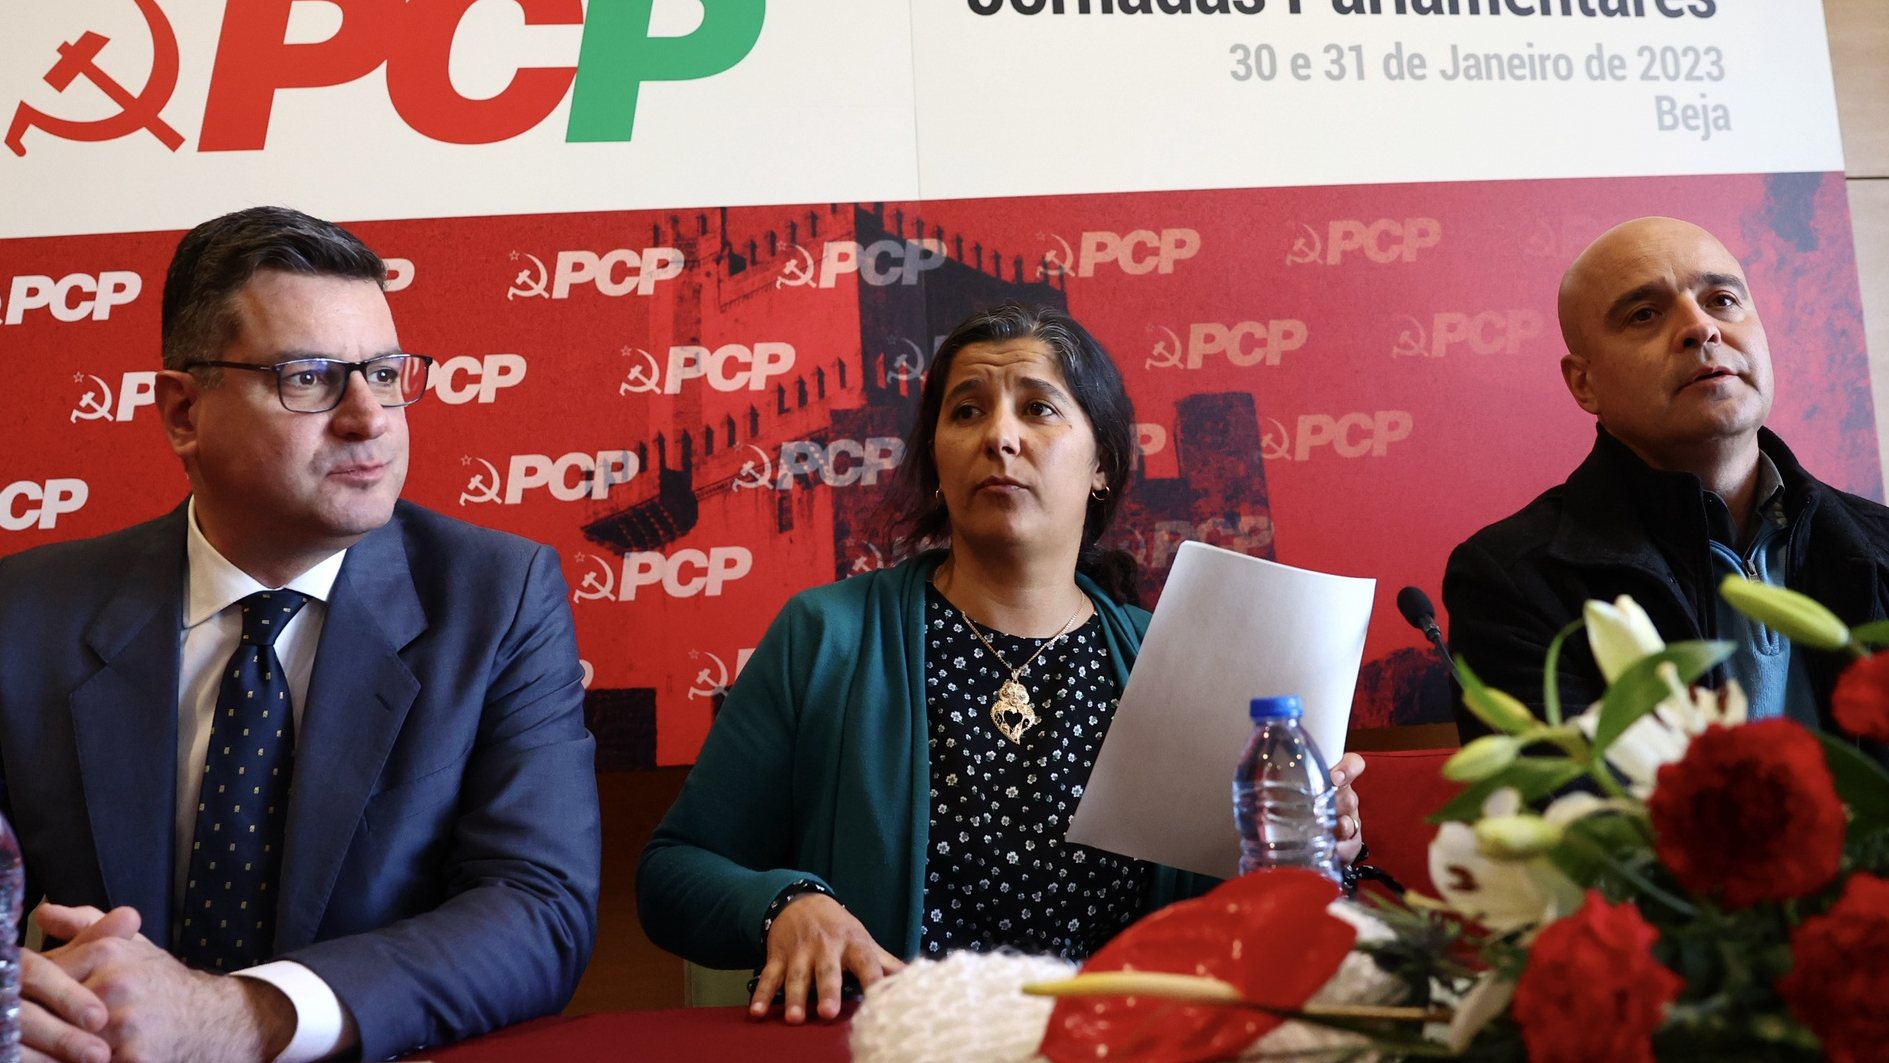 A presidente do grupo parlamentar do Partido Comunista Português (PCP), Paula Santos, ladeada pelos deputdaos Bruno Dias (E) e João Dias (D), durante a conferência de imprensa de apresentação das conclusões das Jornadas Parlamentares do PCP, que hoje terminam em Beja, 31 de janeiro de 2023. NUNO VEIGA/LUSA